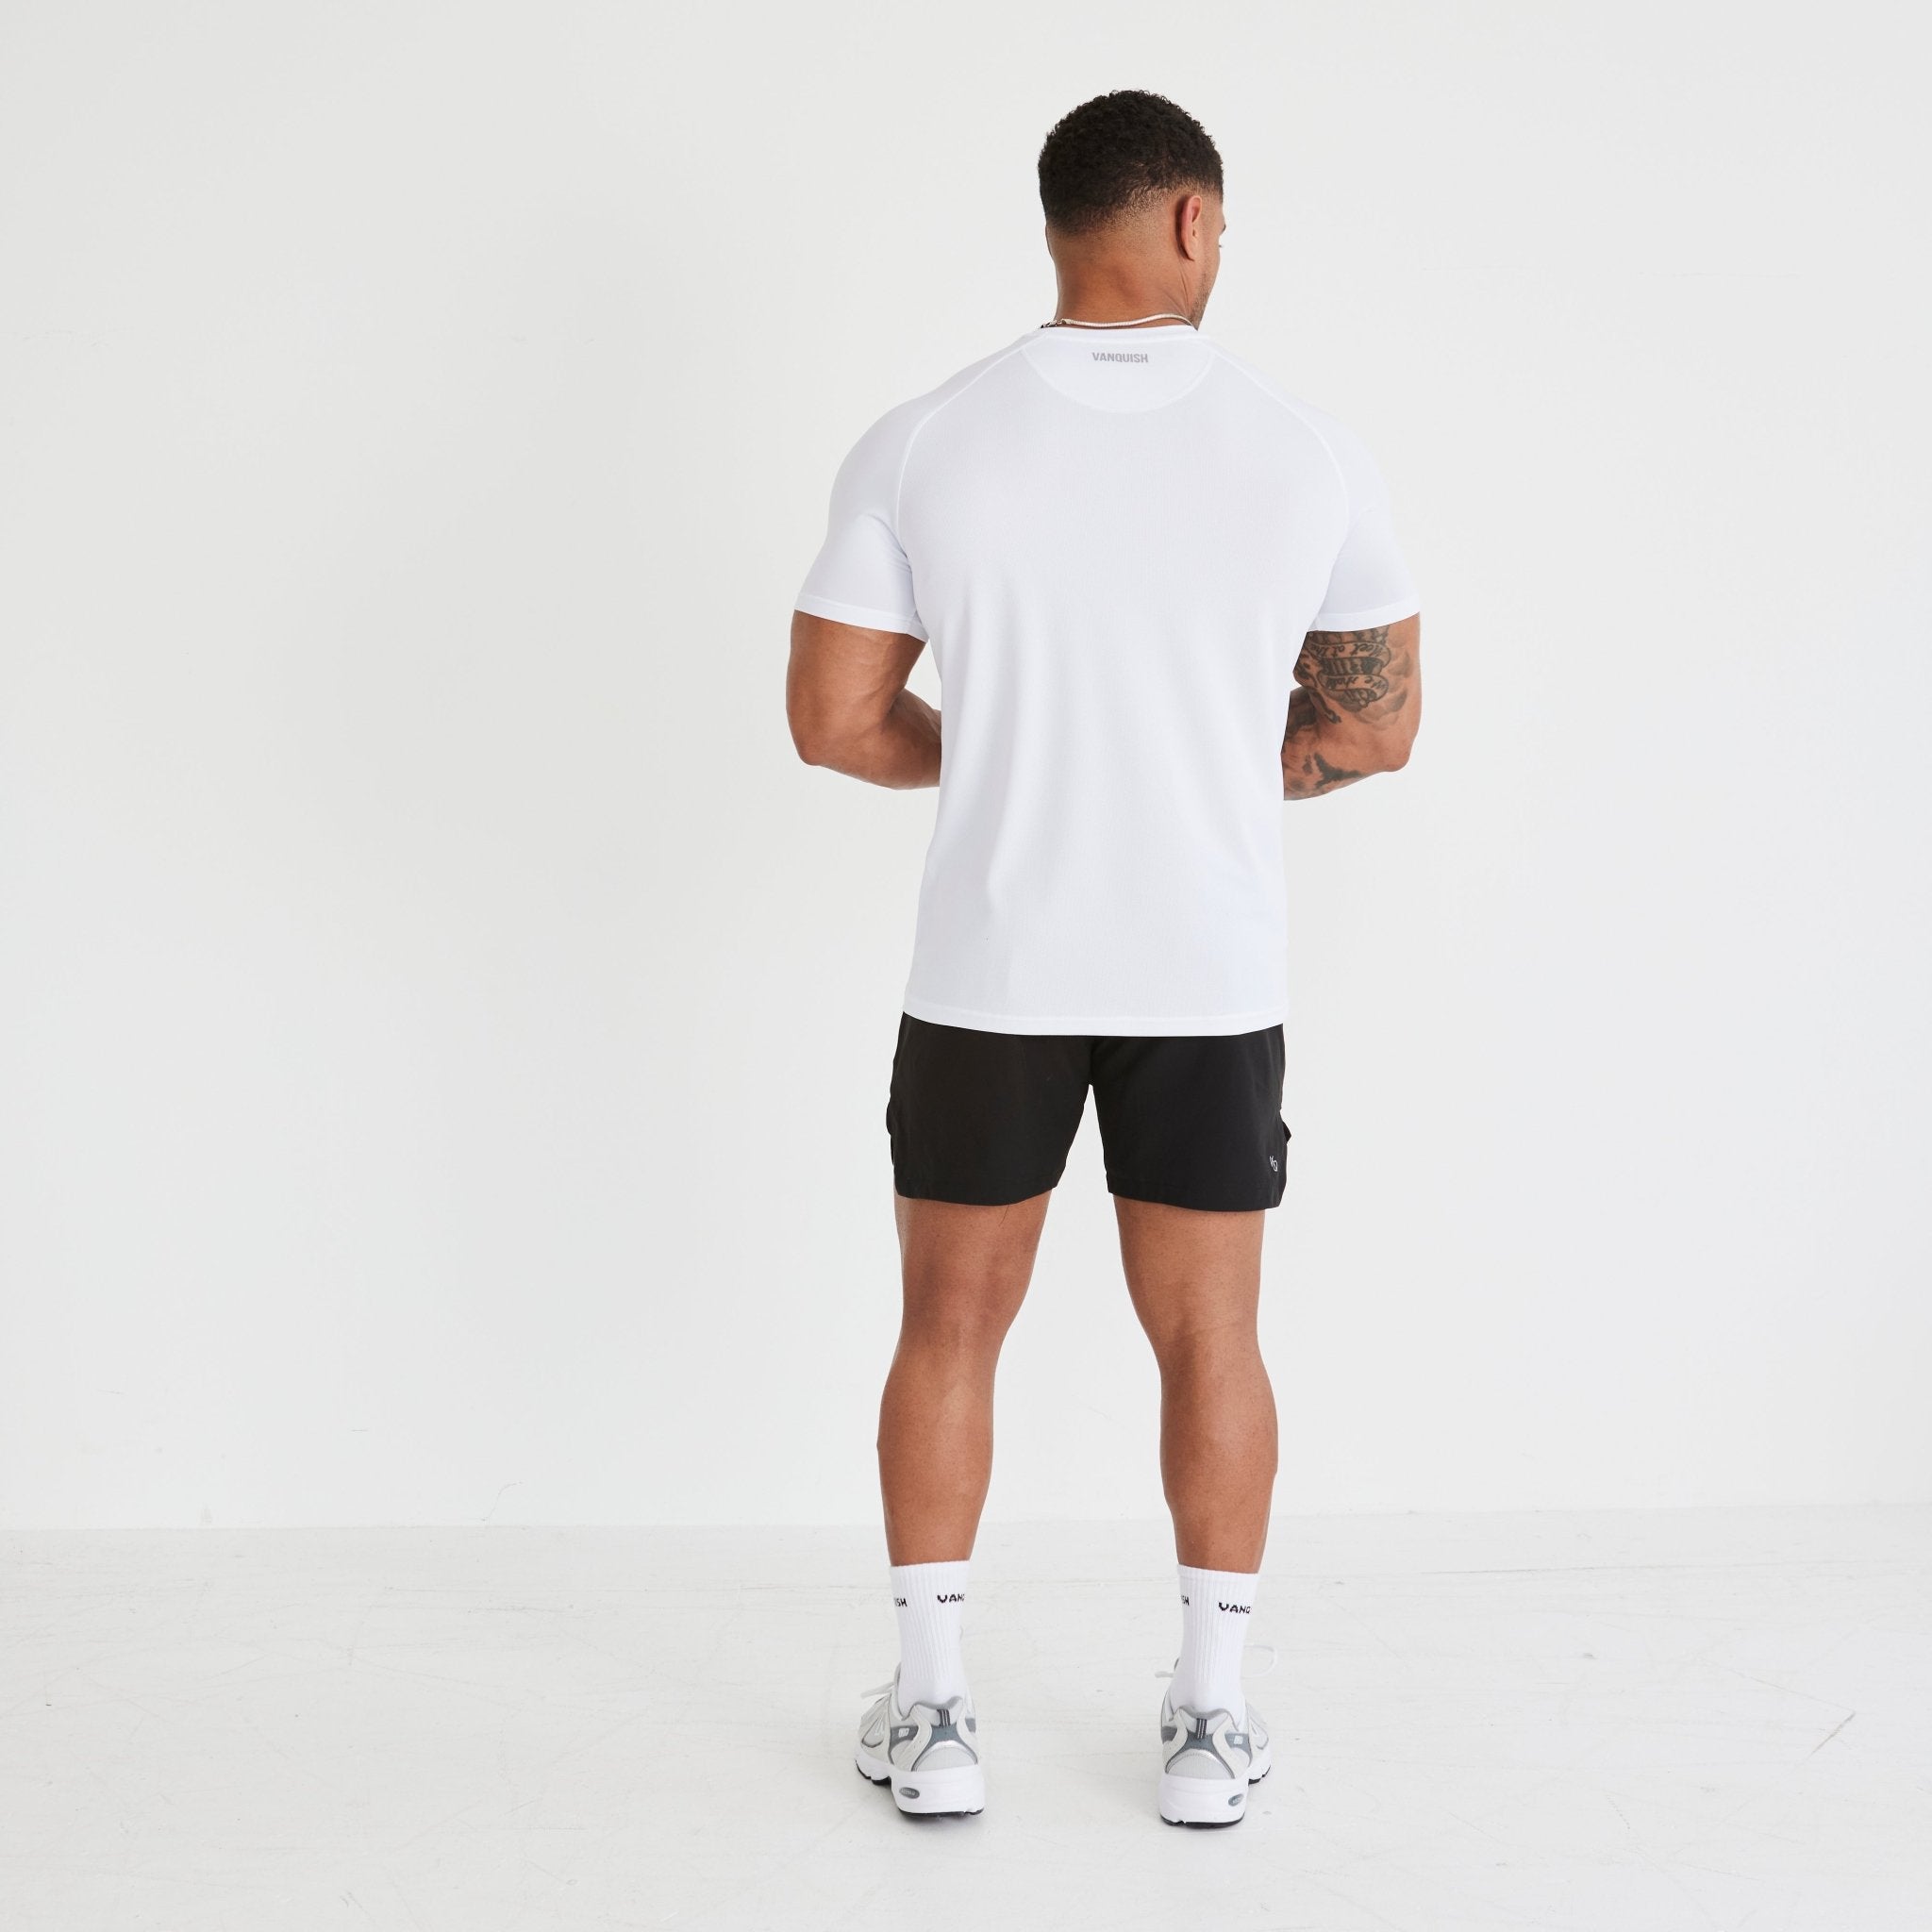 Vanquish Essential White Performance Short Sleeve T Shirt - Vanquish Fitness